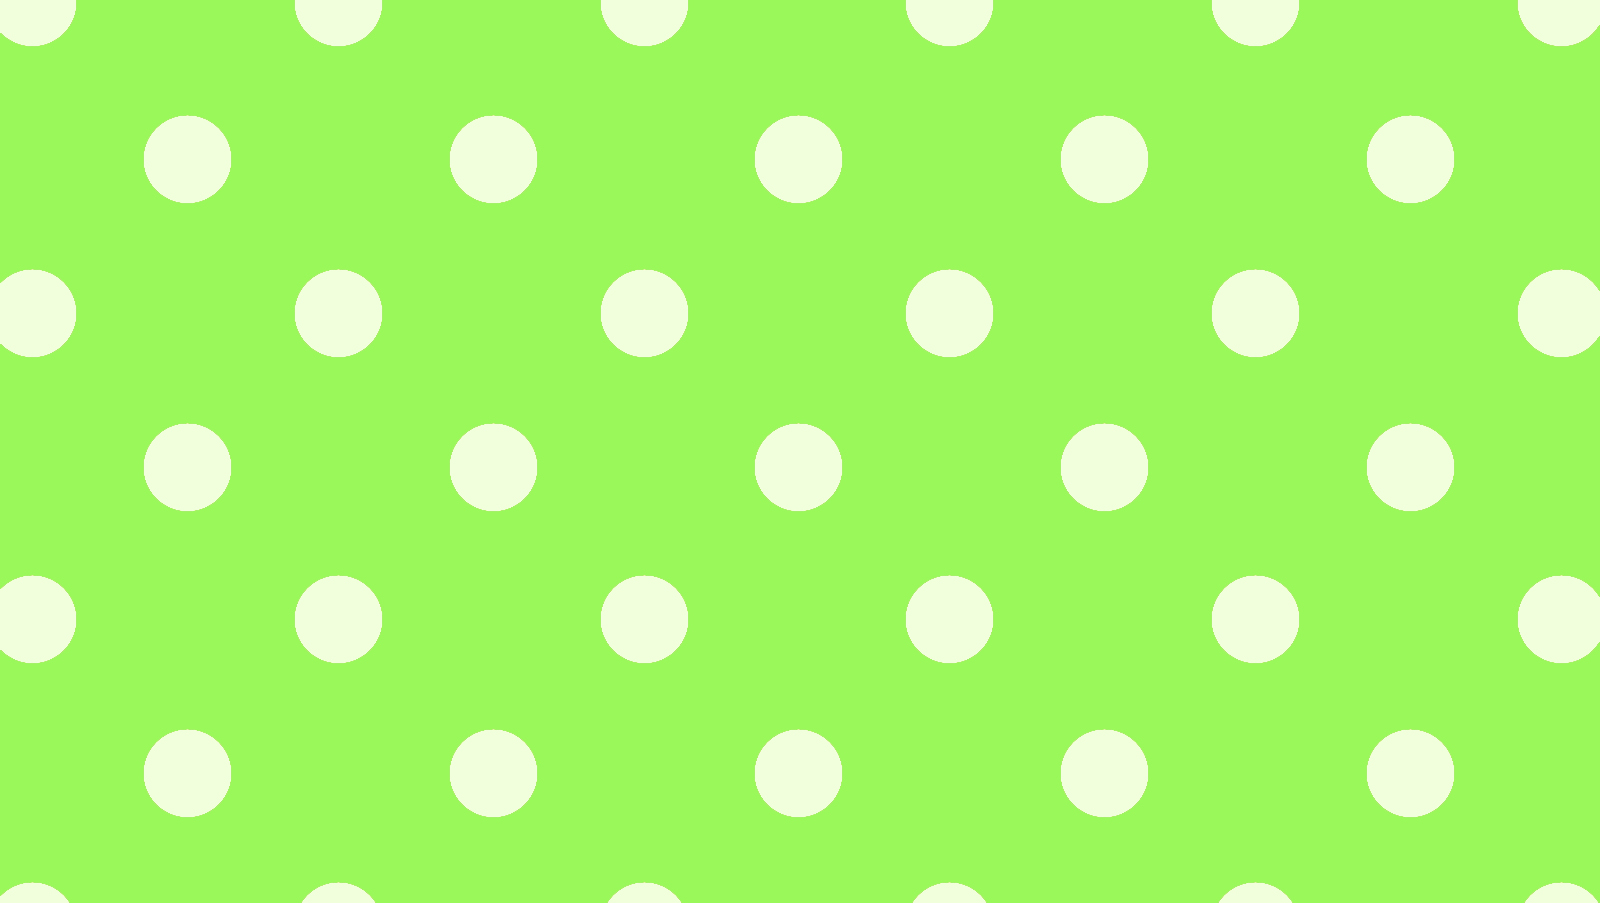 水玉壁紙,緑,パターン,水玉模様,設計,ライン